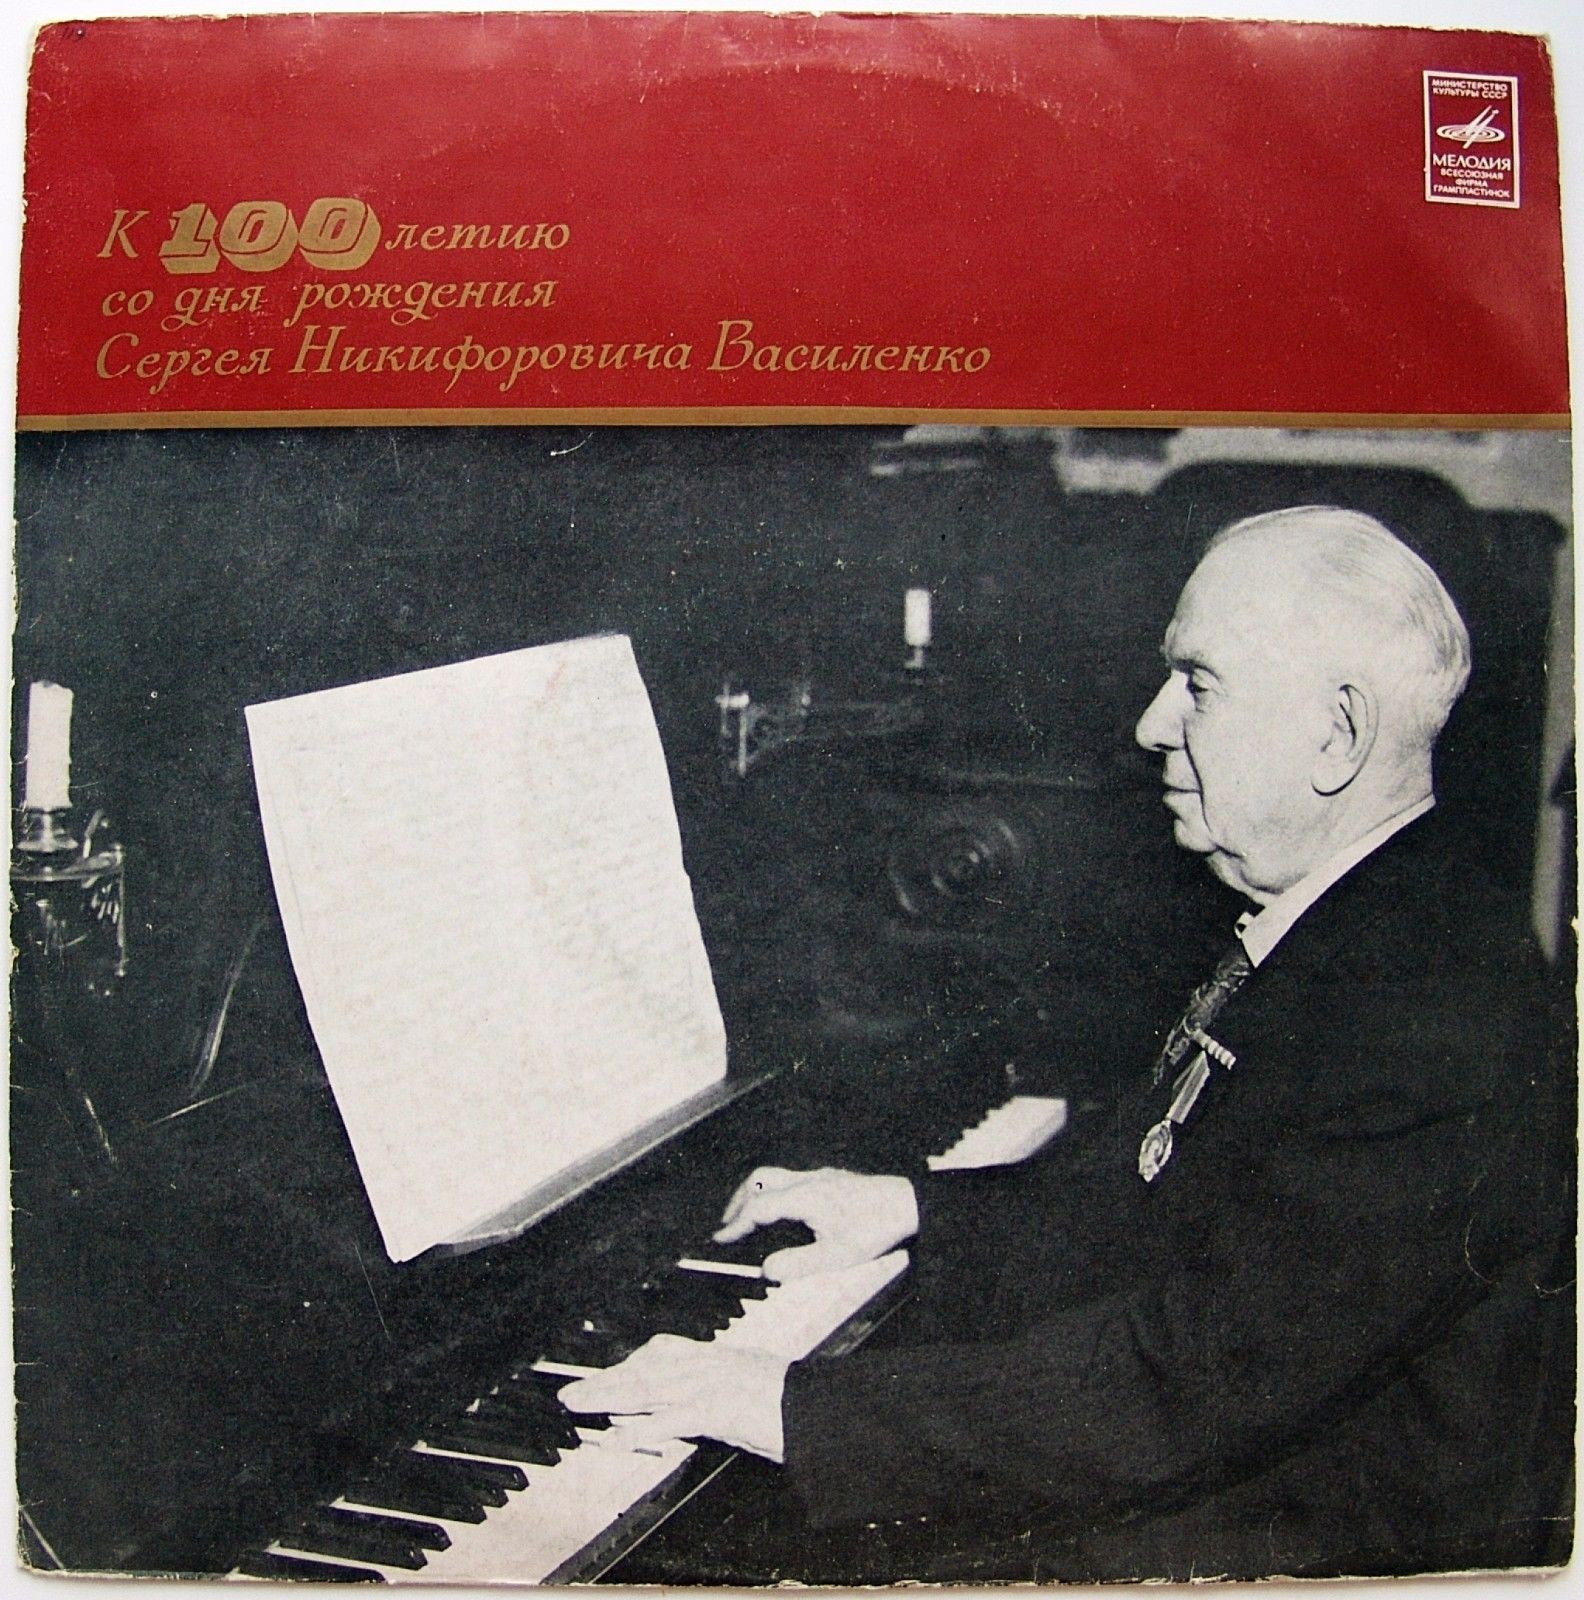 Сергей Василенко (1872-1956)